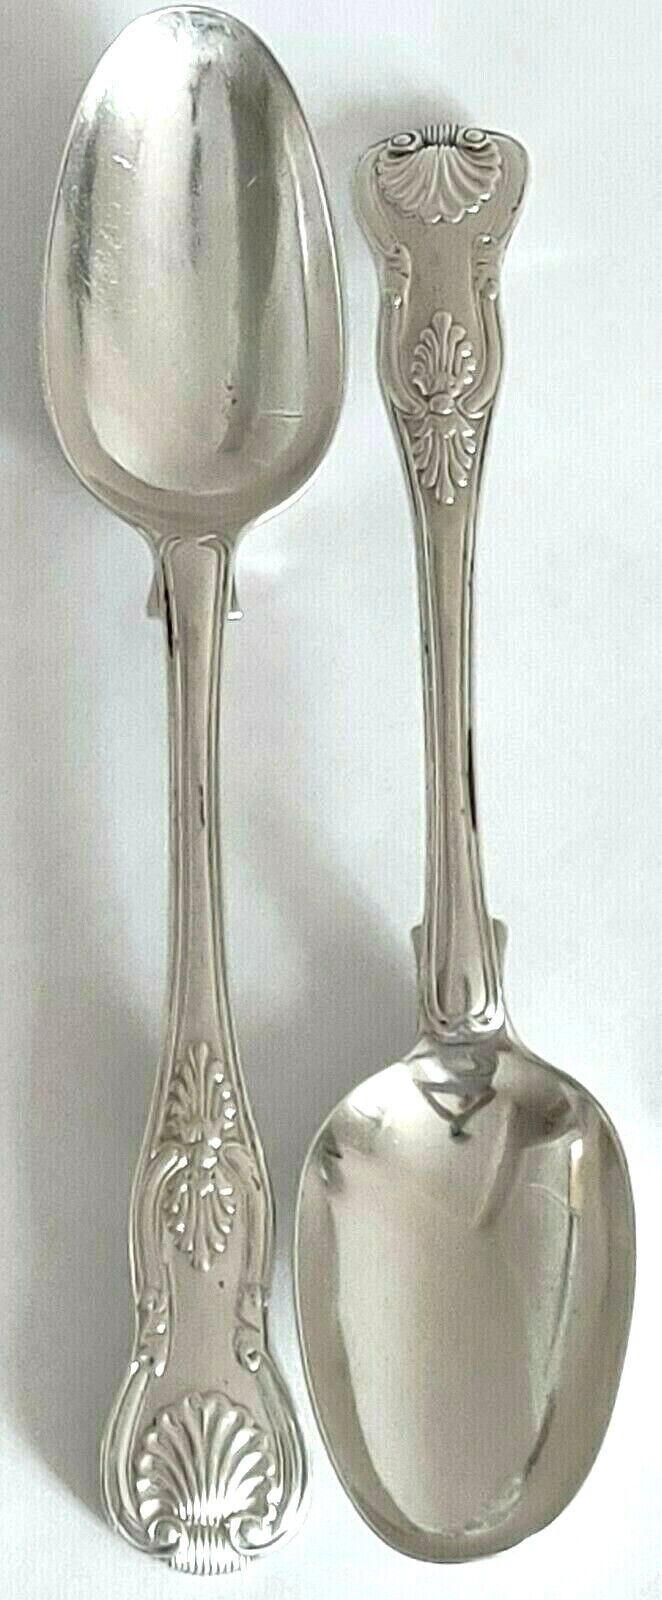 George IV Sterling Silver Pair Table Spoons 200 grams Hallmark London 1825 gssp